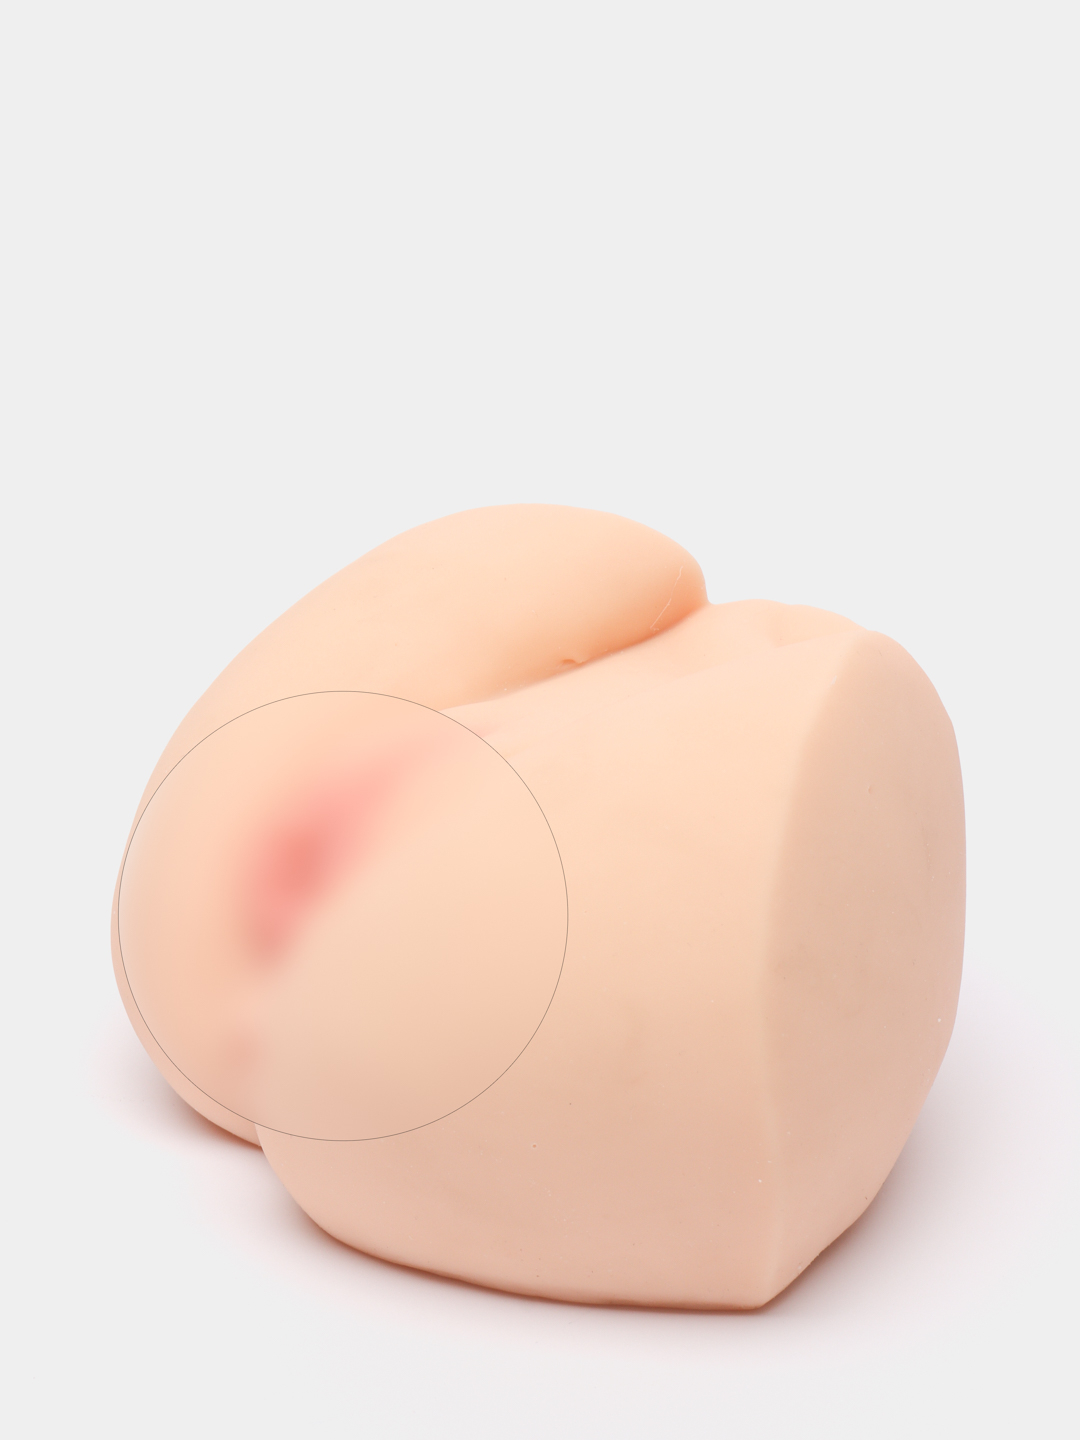 Мужской мастурбатор вагина и анус натуральных размеров 3 вида, секс игрушка  для взрослых купить по цене 2999 ₽ в интернет-магазине KazanExpress